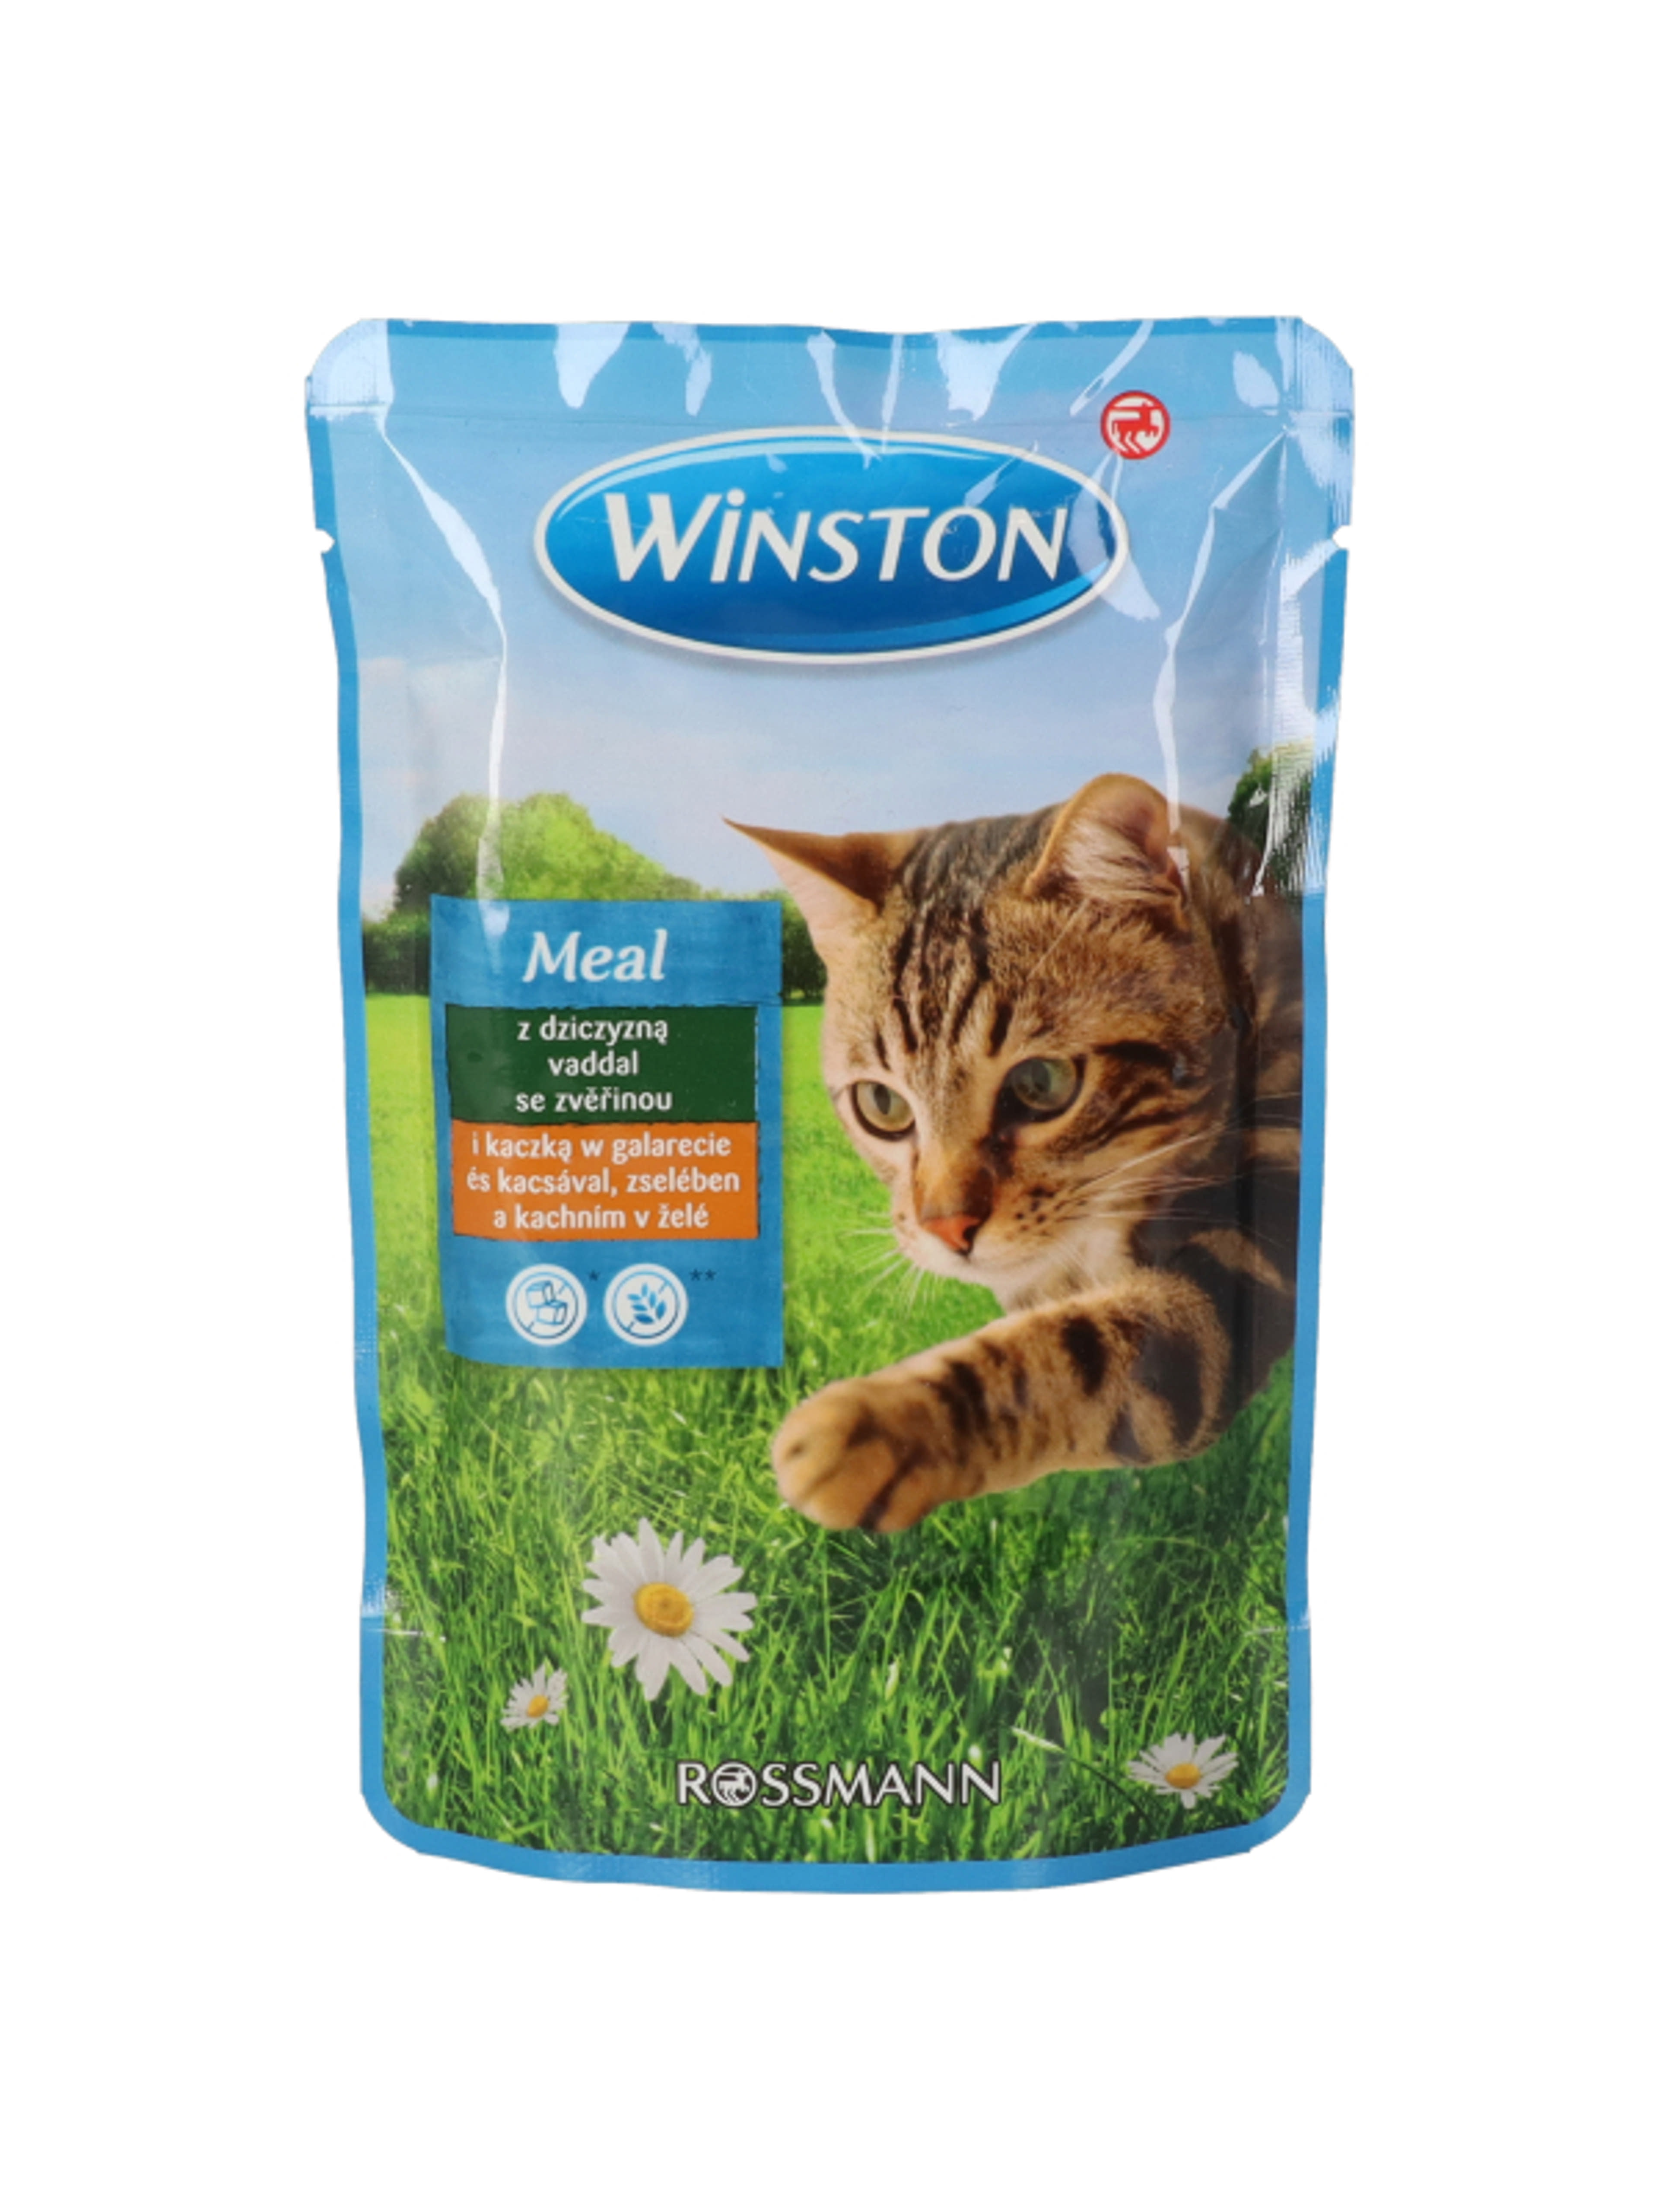 Winston alutasak macskáknak, vad és kacsahúsból - 100 g